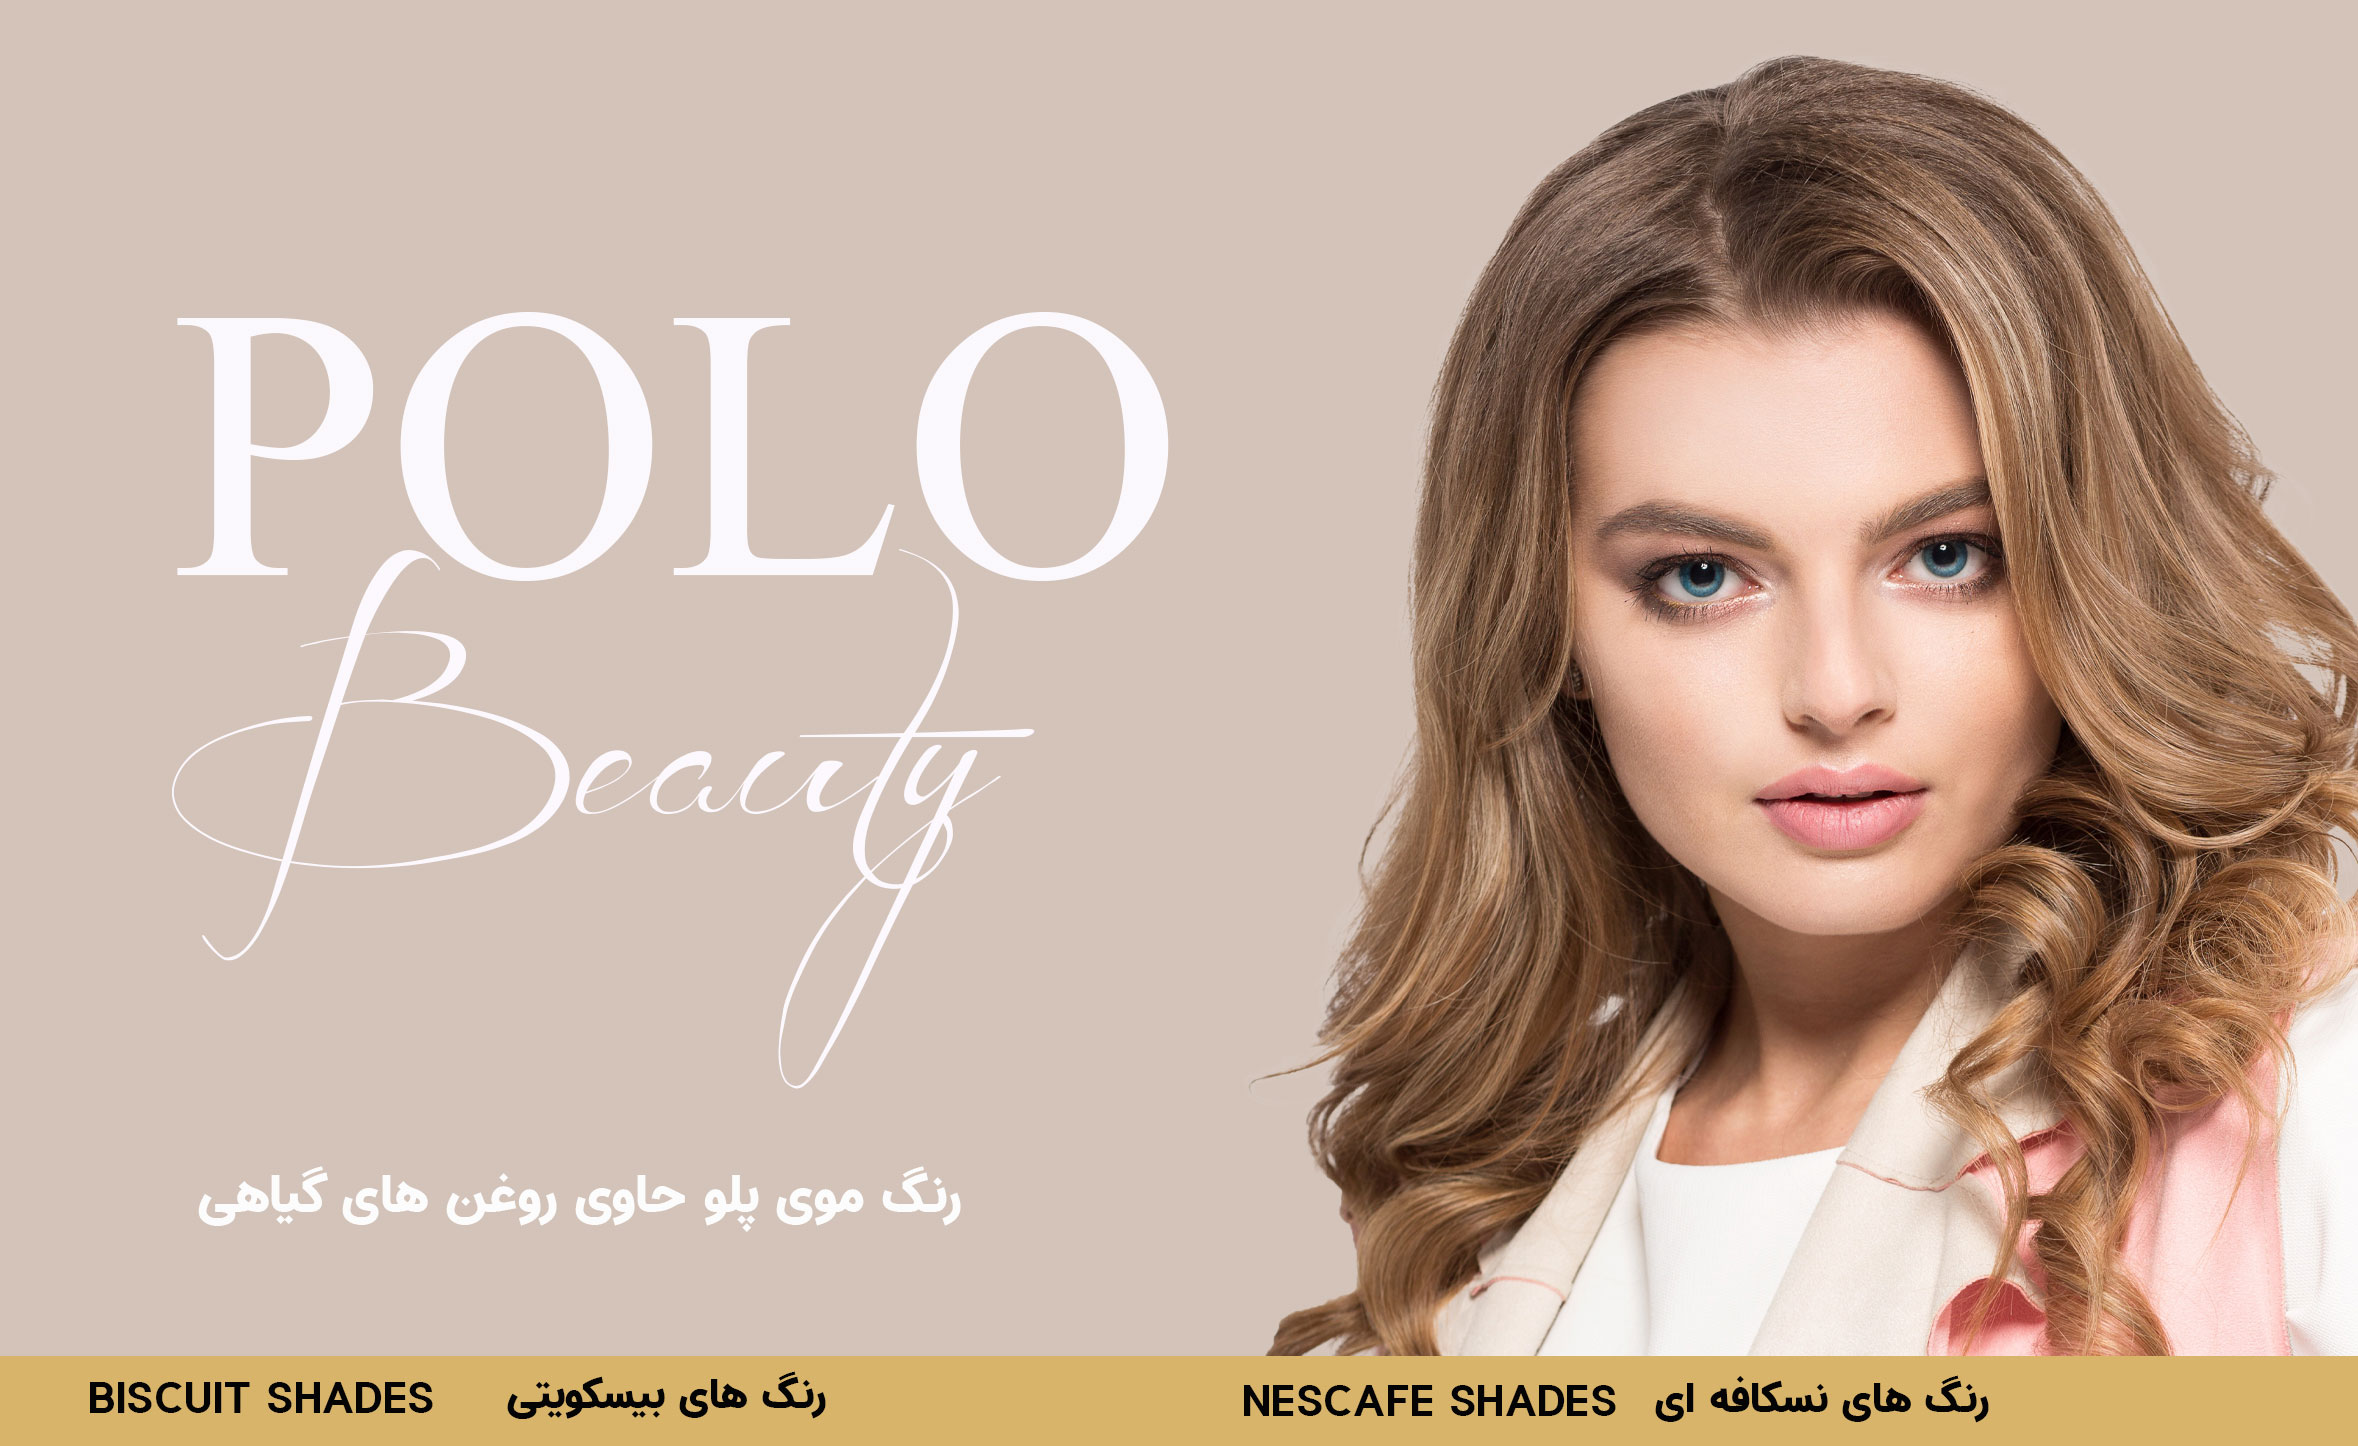 فروش عمده رنگ مو پولو Polo در معتبرترین نمایندگی در ایران